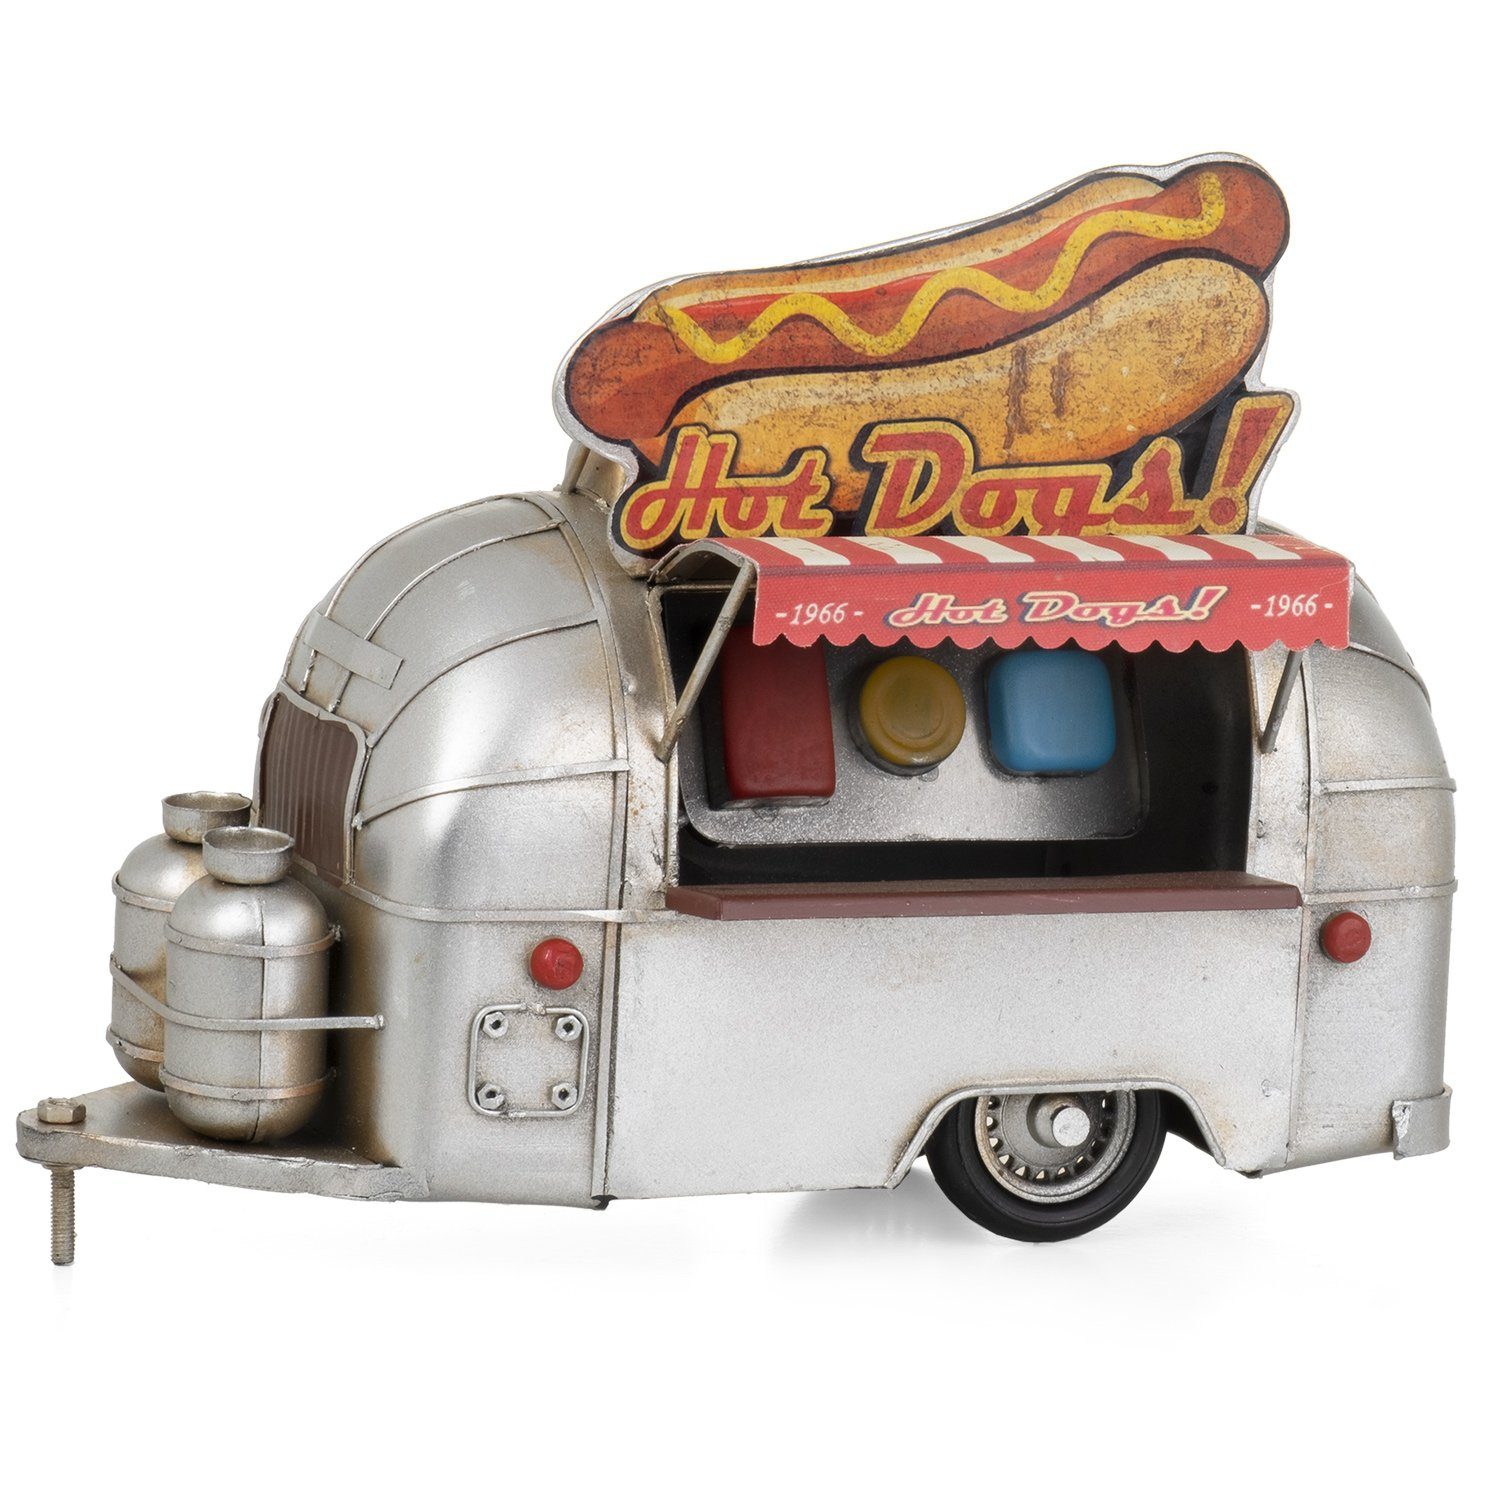 Moritz Dekoobjekt Blech-Deko Hot-Dog Stand Anhänger Wohnwagen, Modell Nostalgie Antik-Stil Retro Blechmodell Miniatur Nachbildung